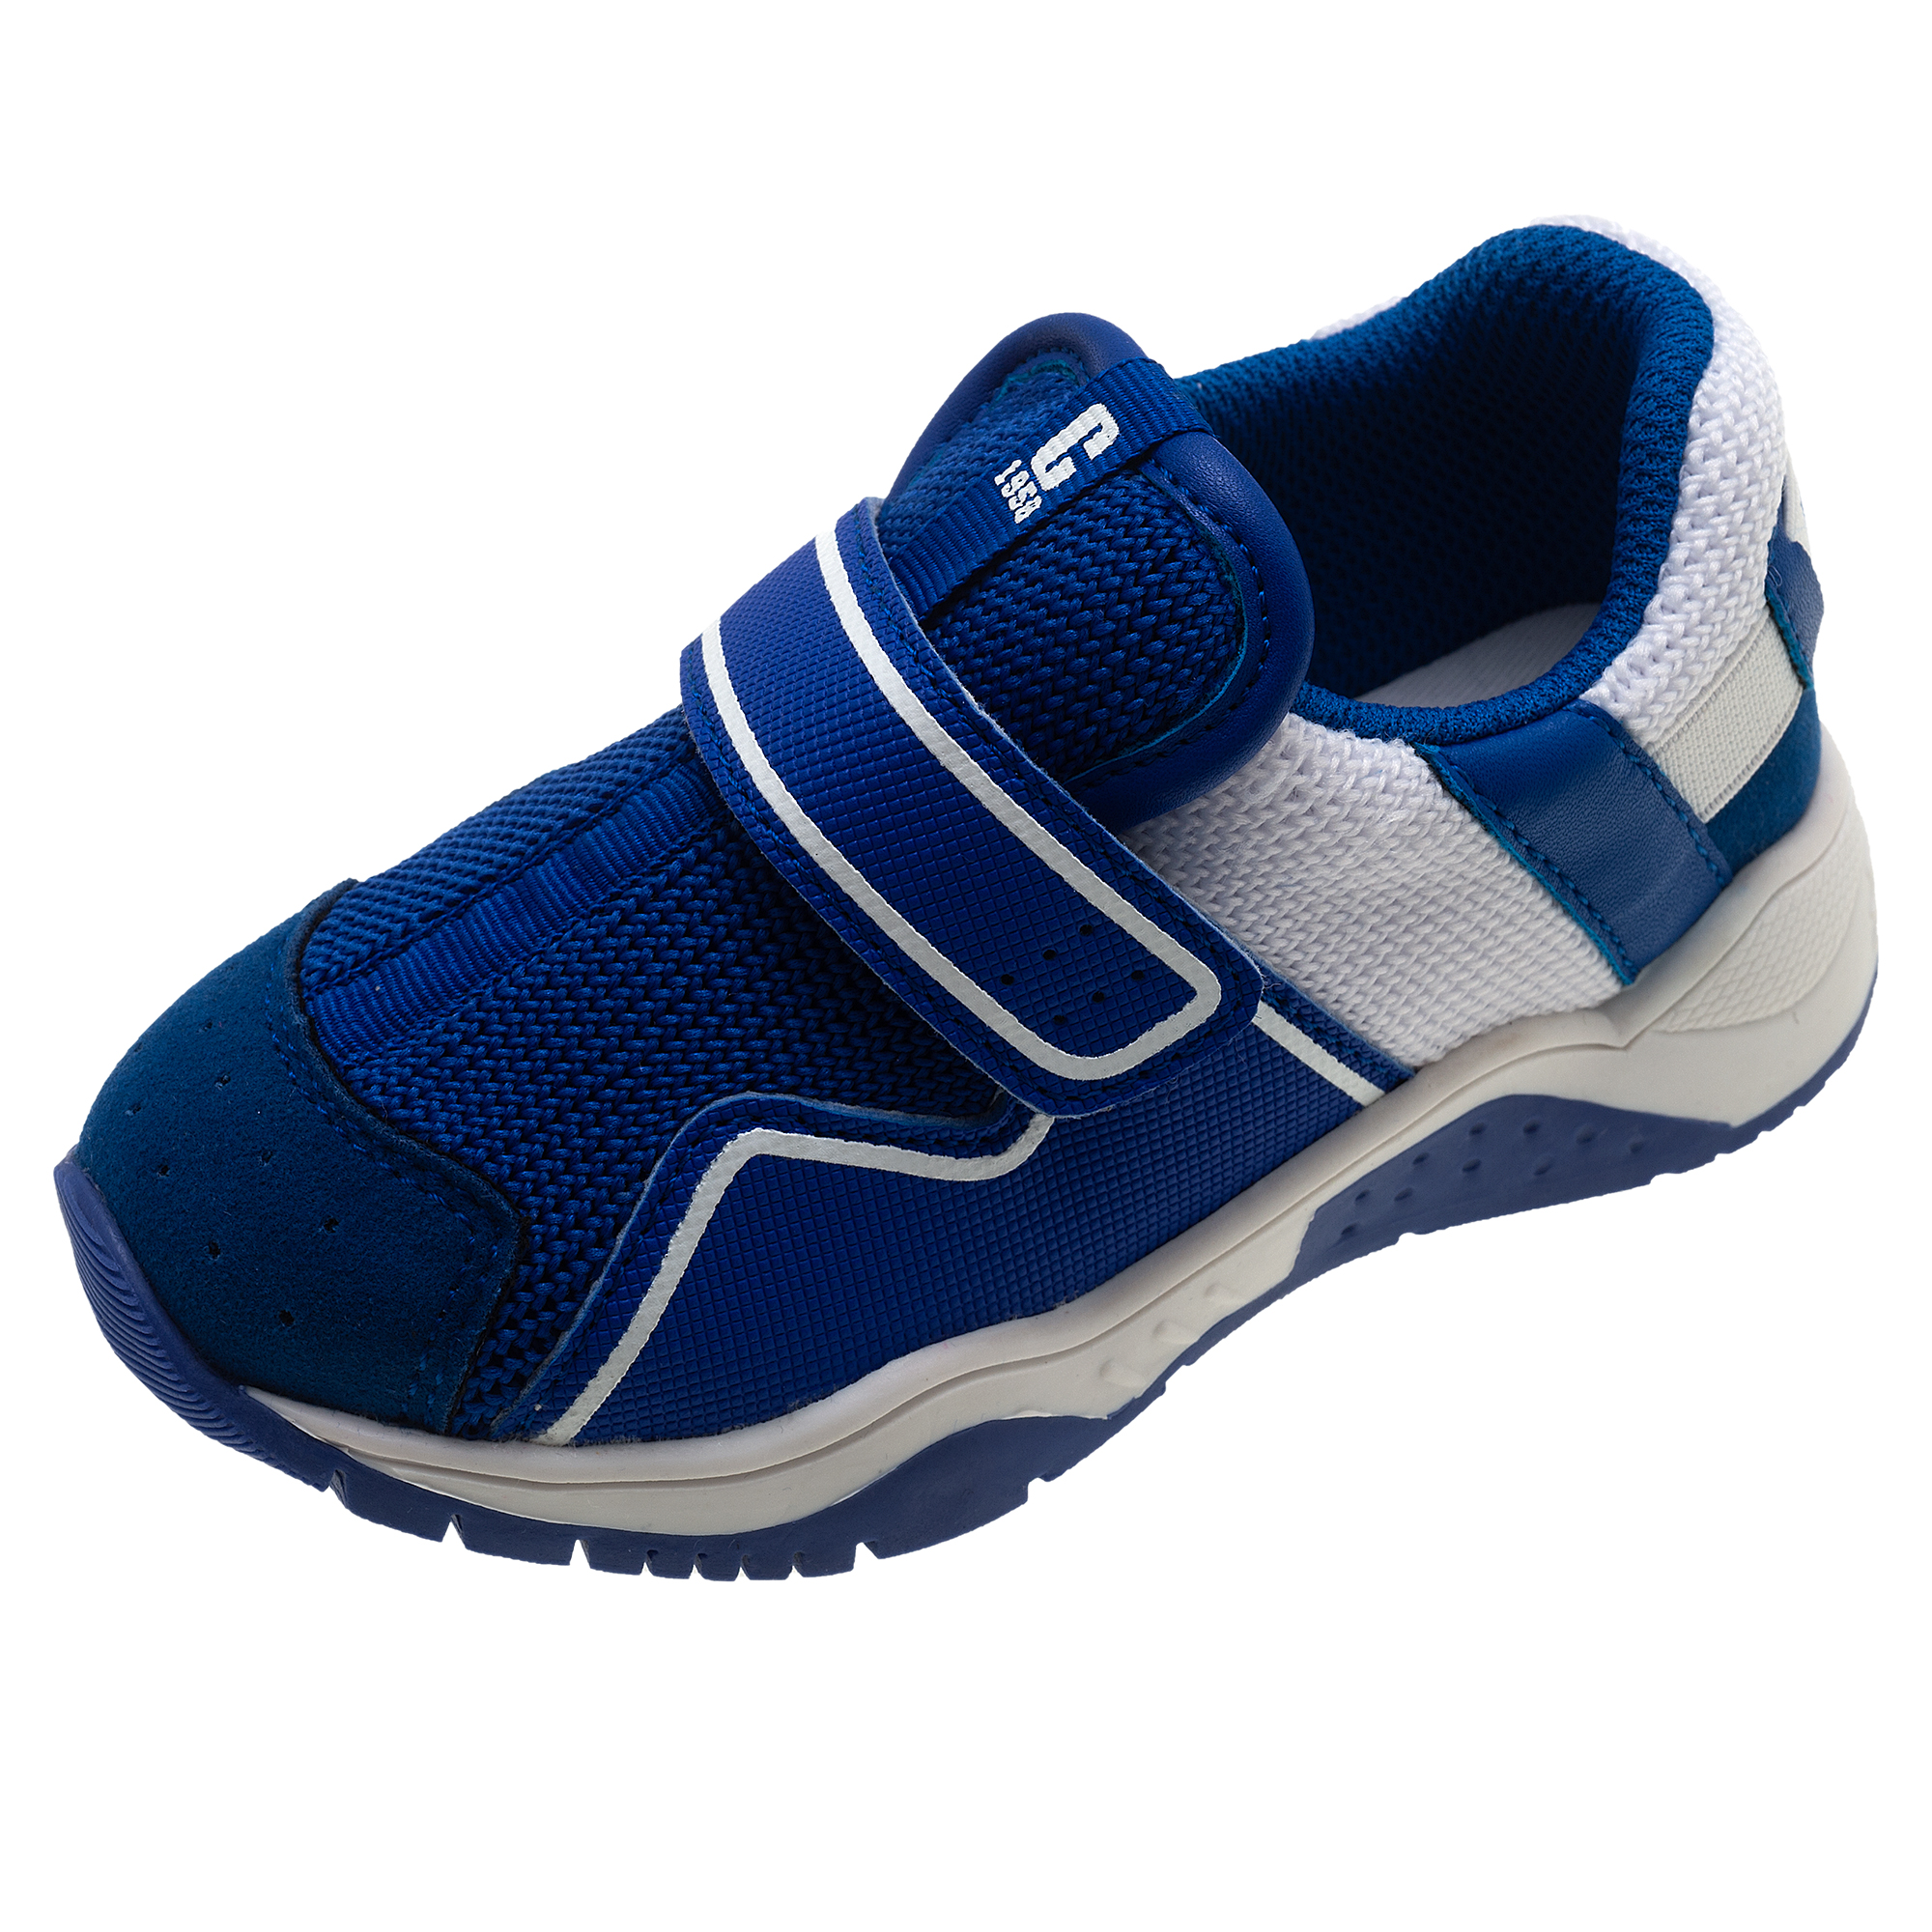 Pantof sport copii Chicco Campione, bleu deschis, 61583 CHICCO